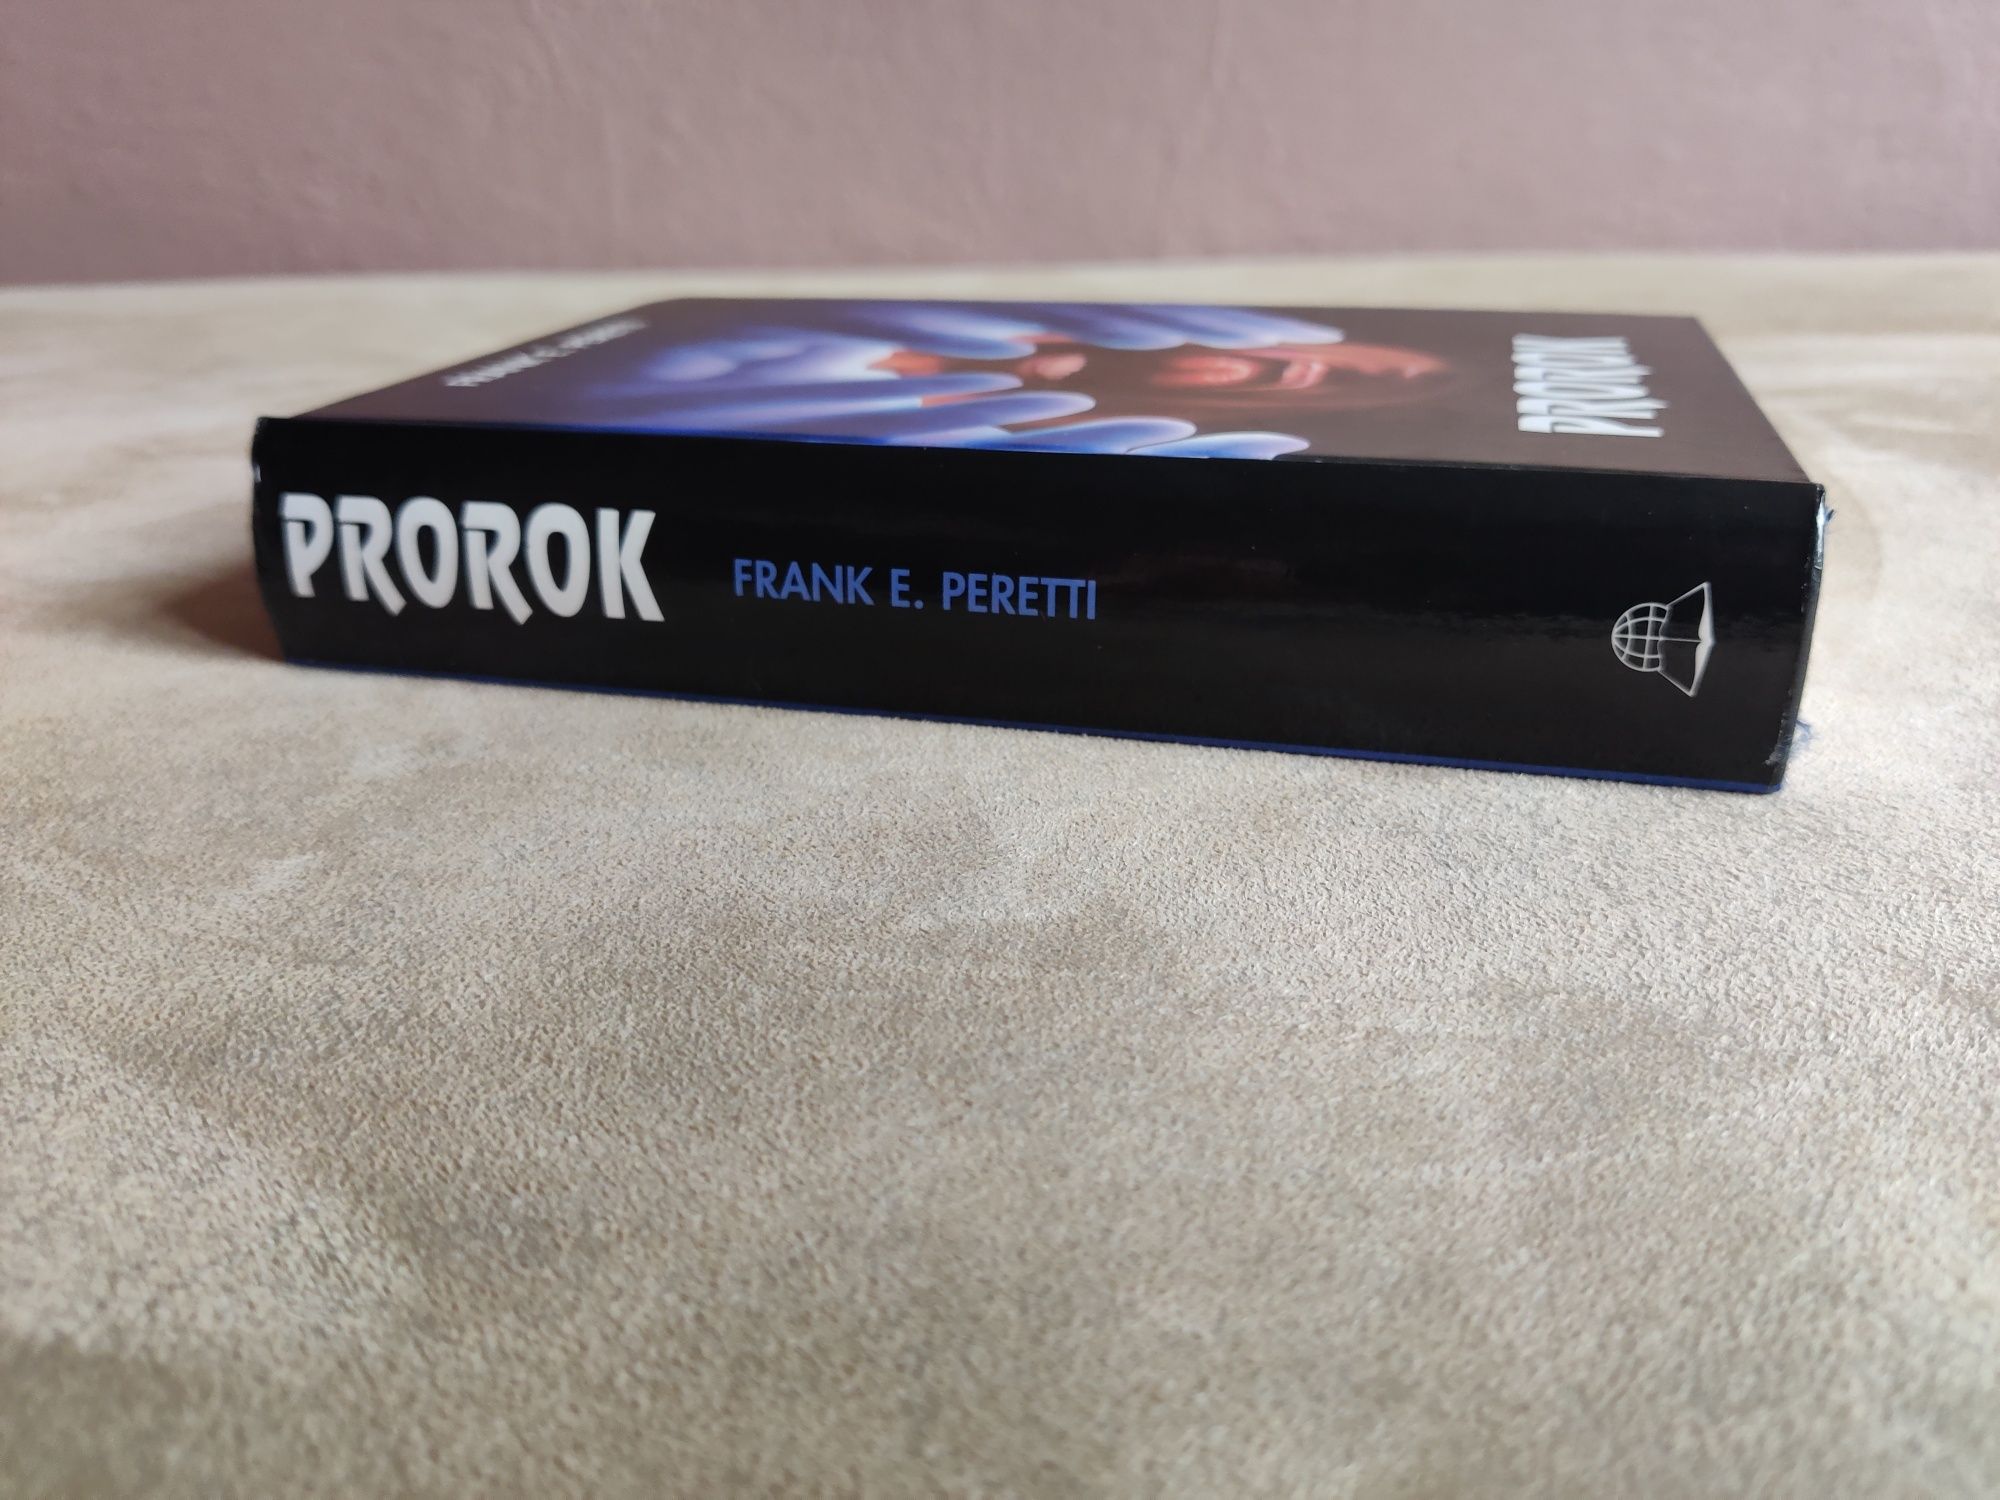 Prorok - Frank E. Peretti